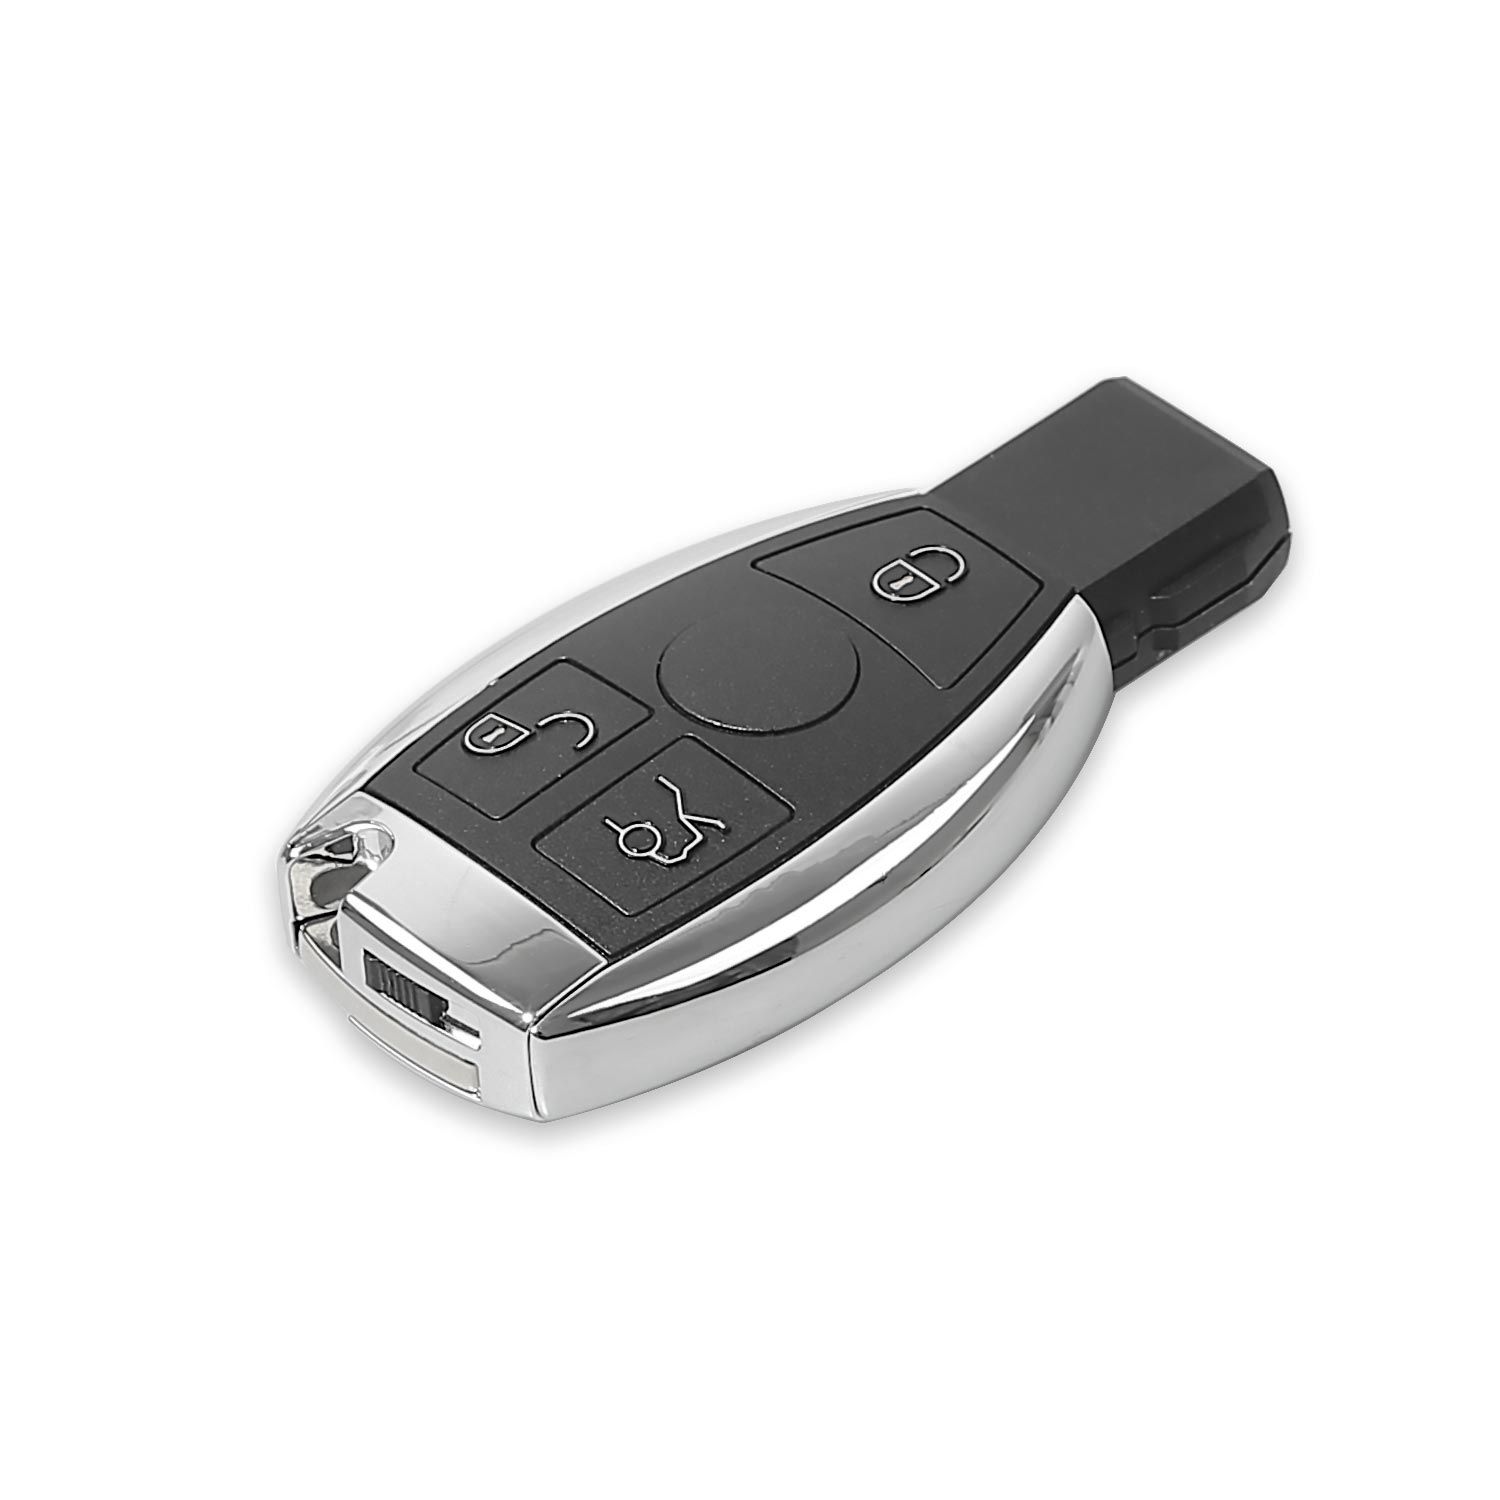 5 xhorse vvdi be Key pro SMART Key Shell Mercedes - Benz 3 botones para obtener 5 tokens gratuitos de la herramienta vvdi MB